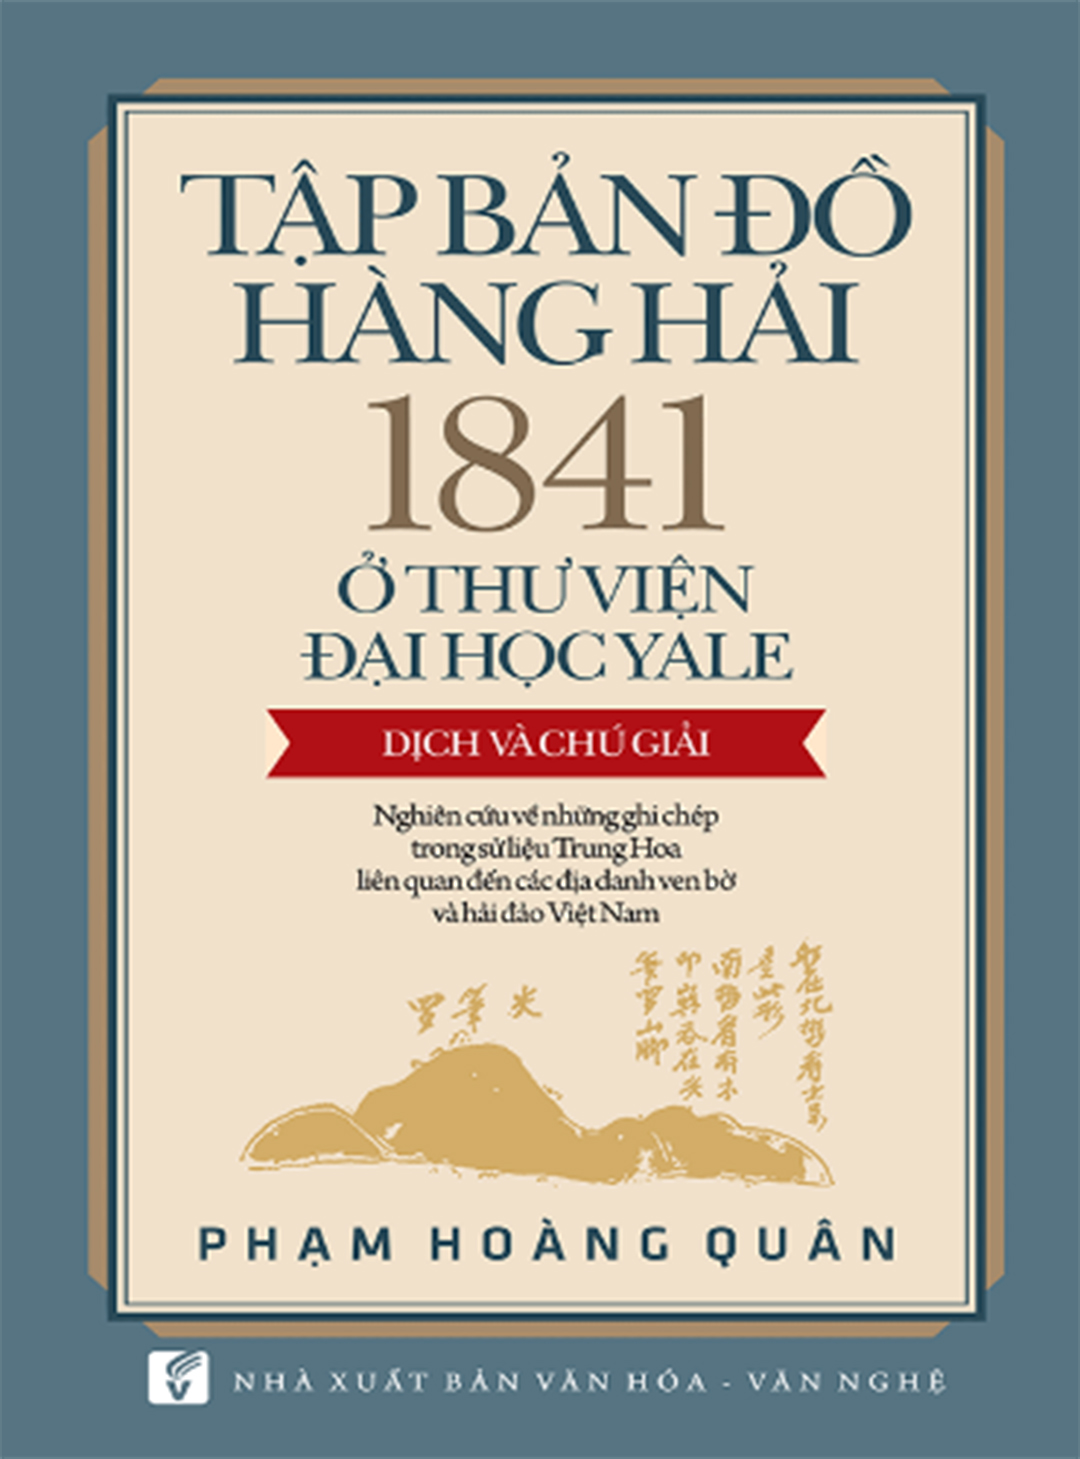 Sách sử Việt sử dụng sử liệu Trung Quốc: Cần phương pháp luận  để tránh “bẫy”